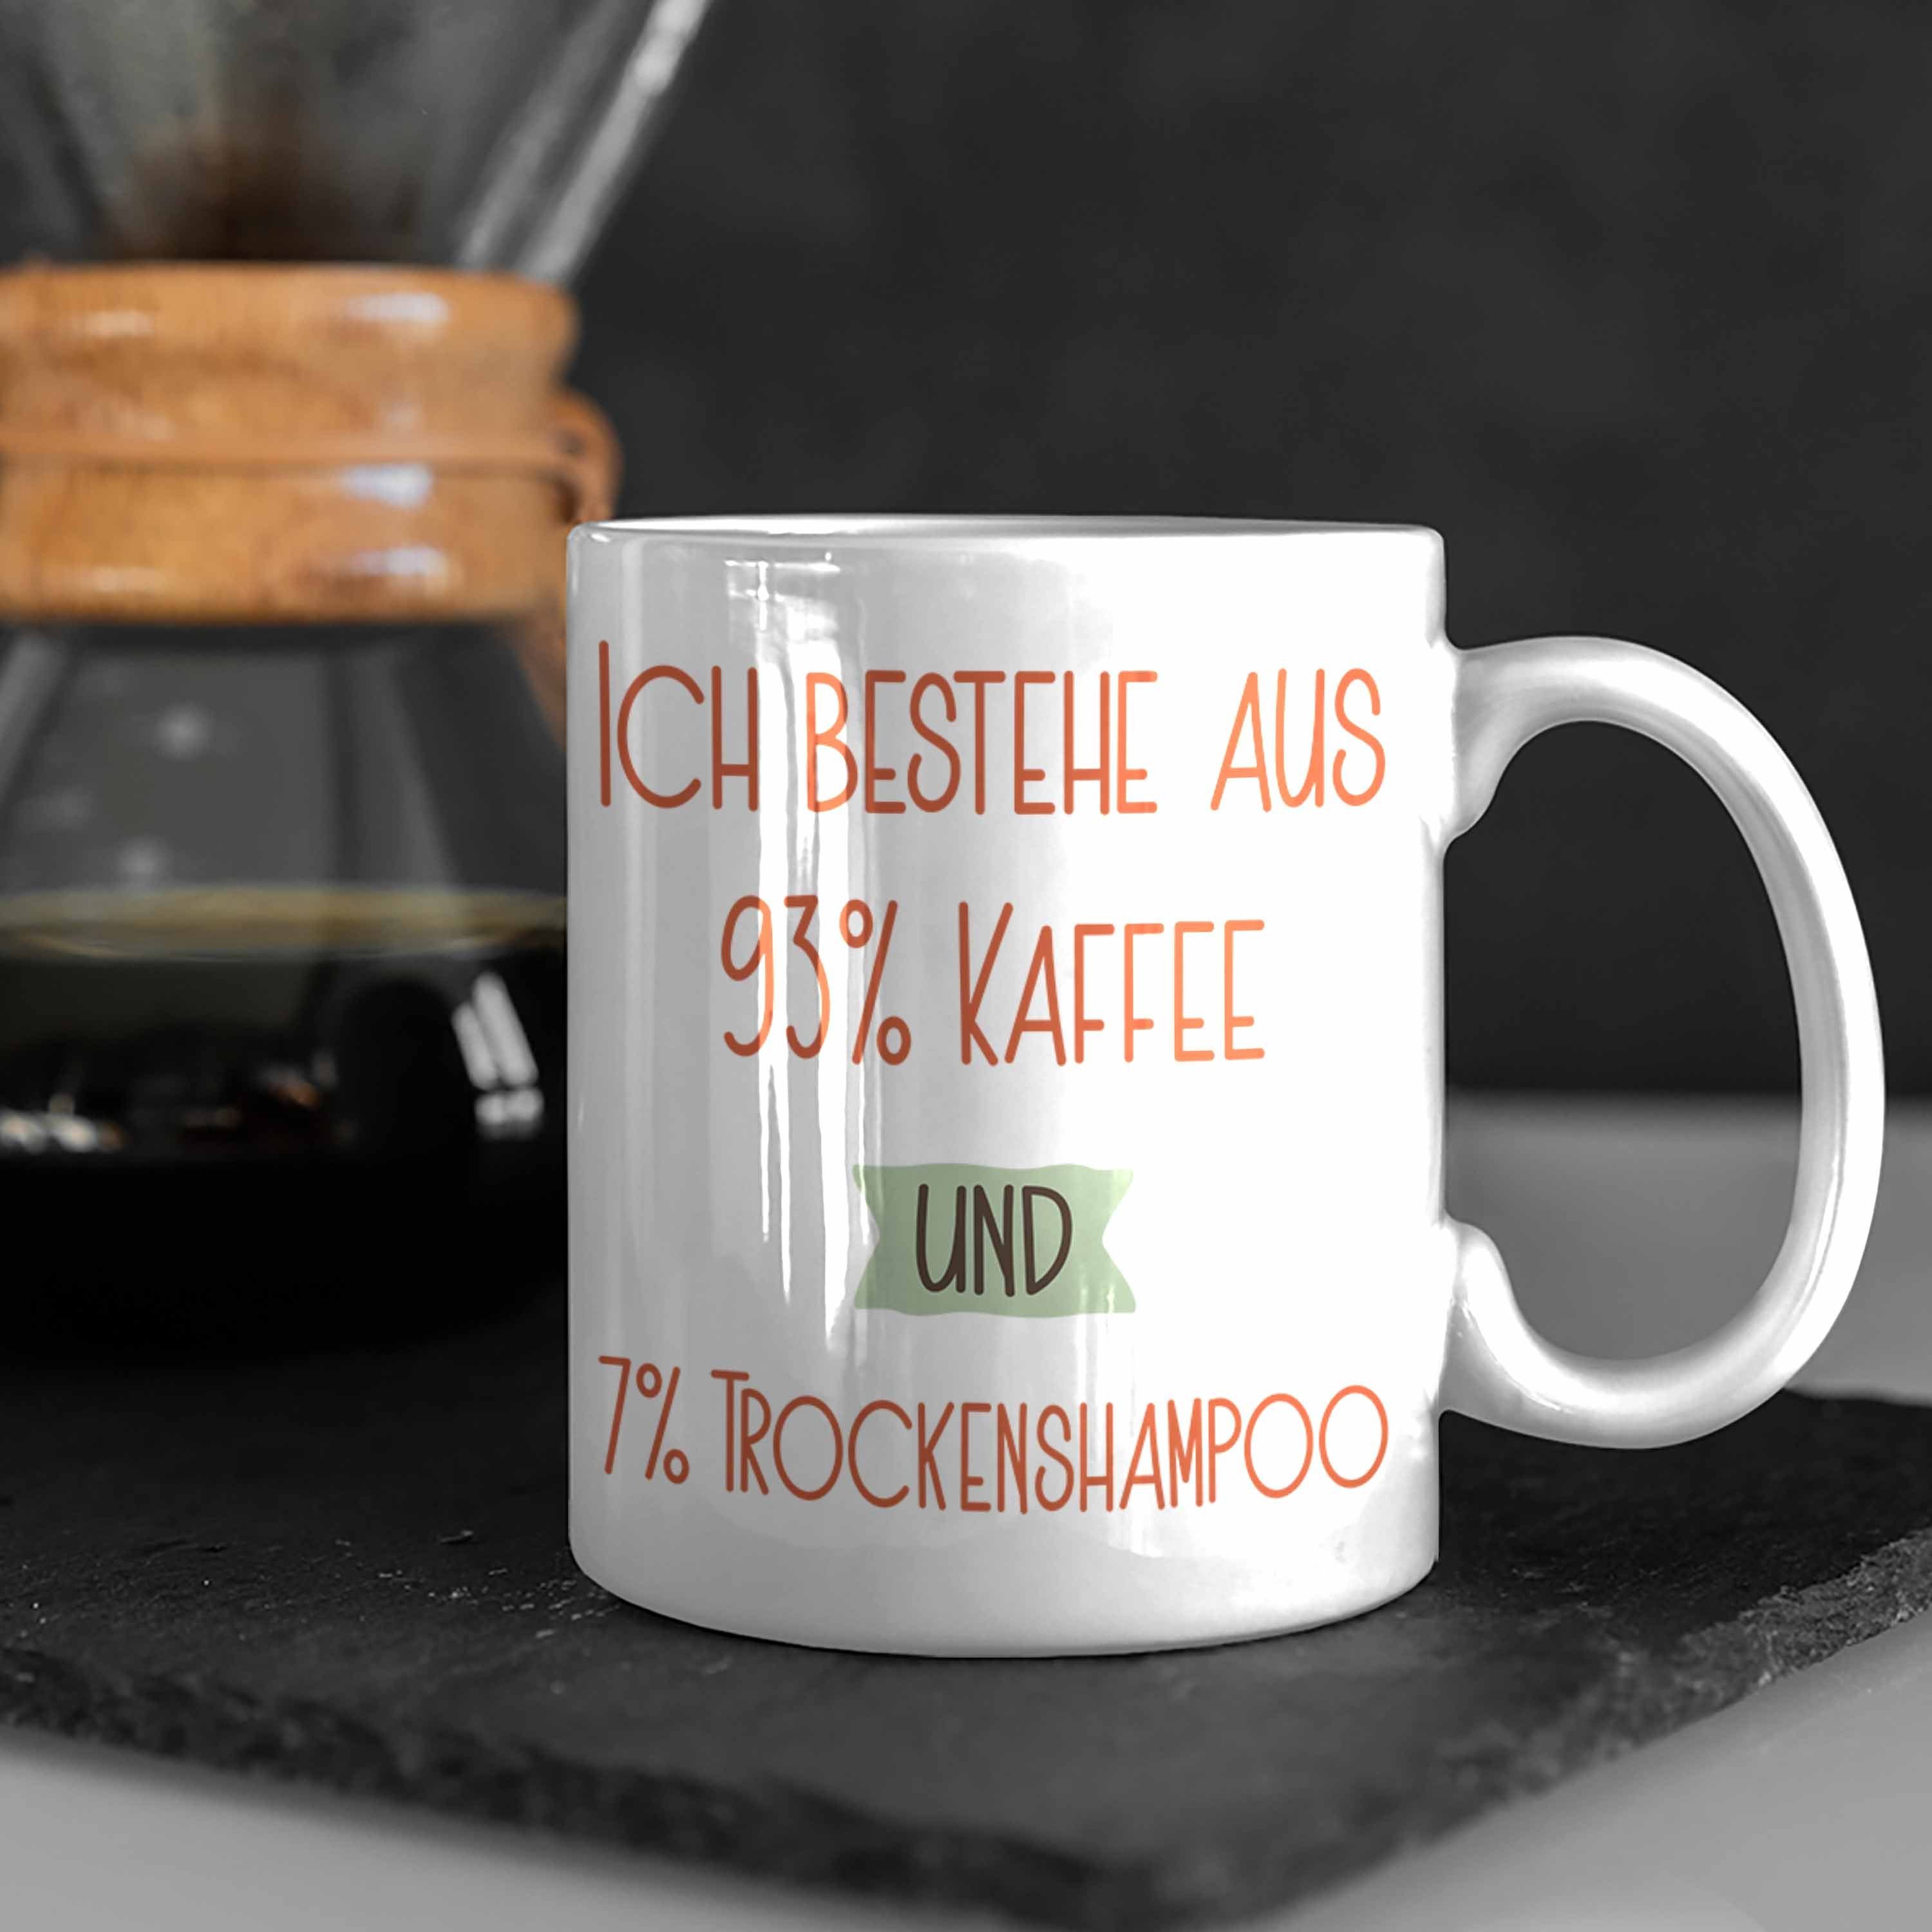 Trendation Tasse 93% Kaffee Geschenk Tasse Für Trockenshampoo und Lustiger Spruch Weiss 7% Ko